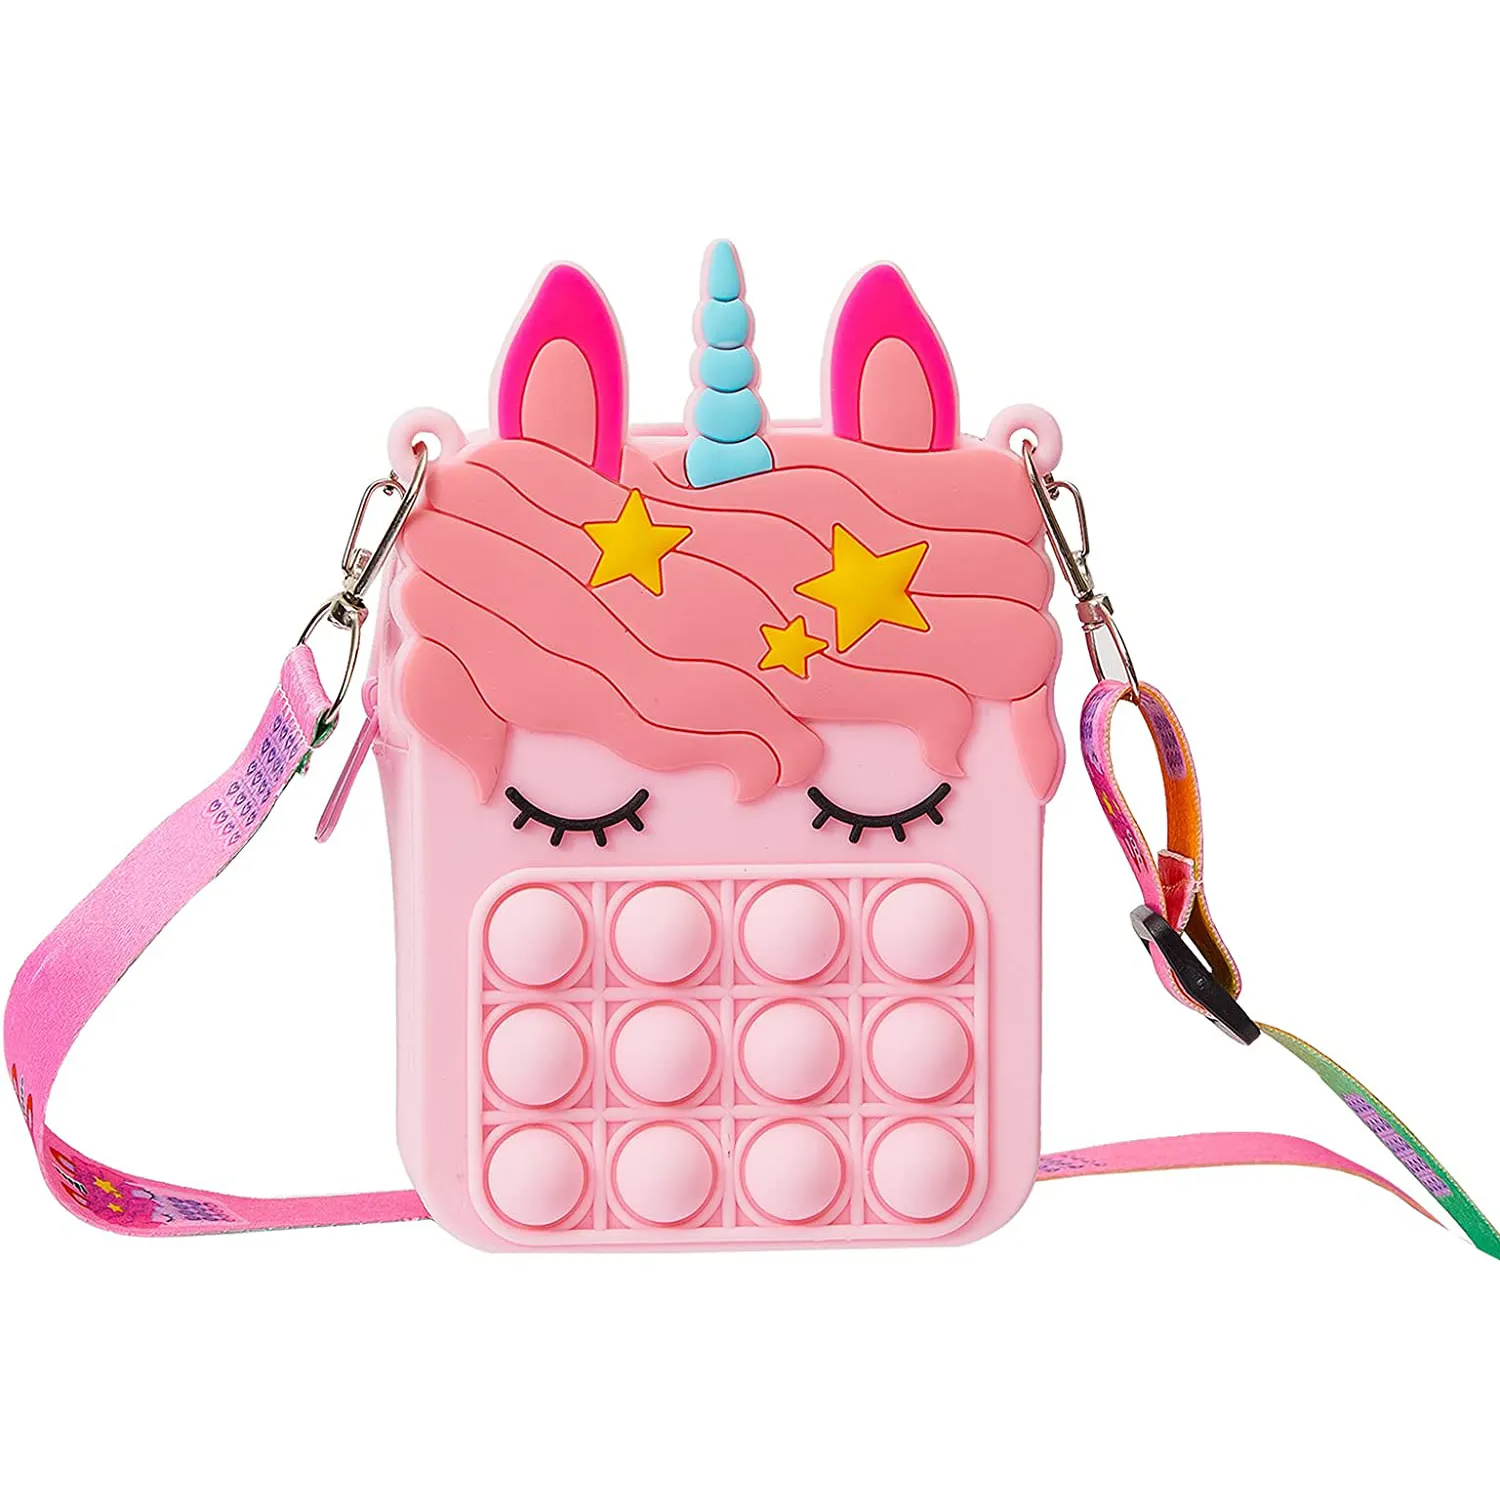 Tik Tok küçük sevimli benzersiz silikon Pop Push It Fidget Unicorn omuz çantaları oyuncaklar Crossbody çanta çocuklar için